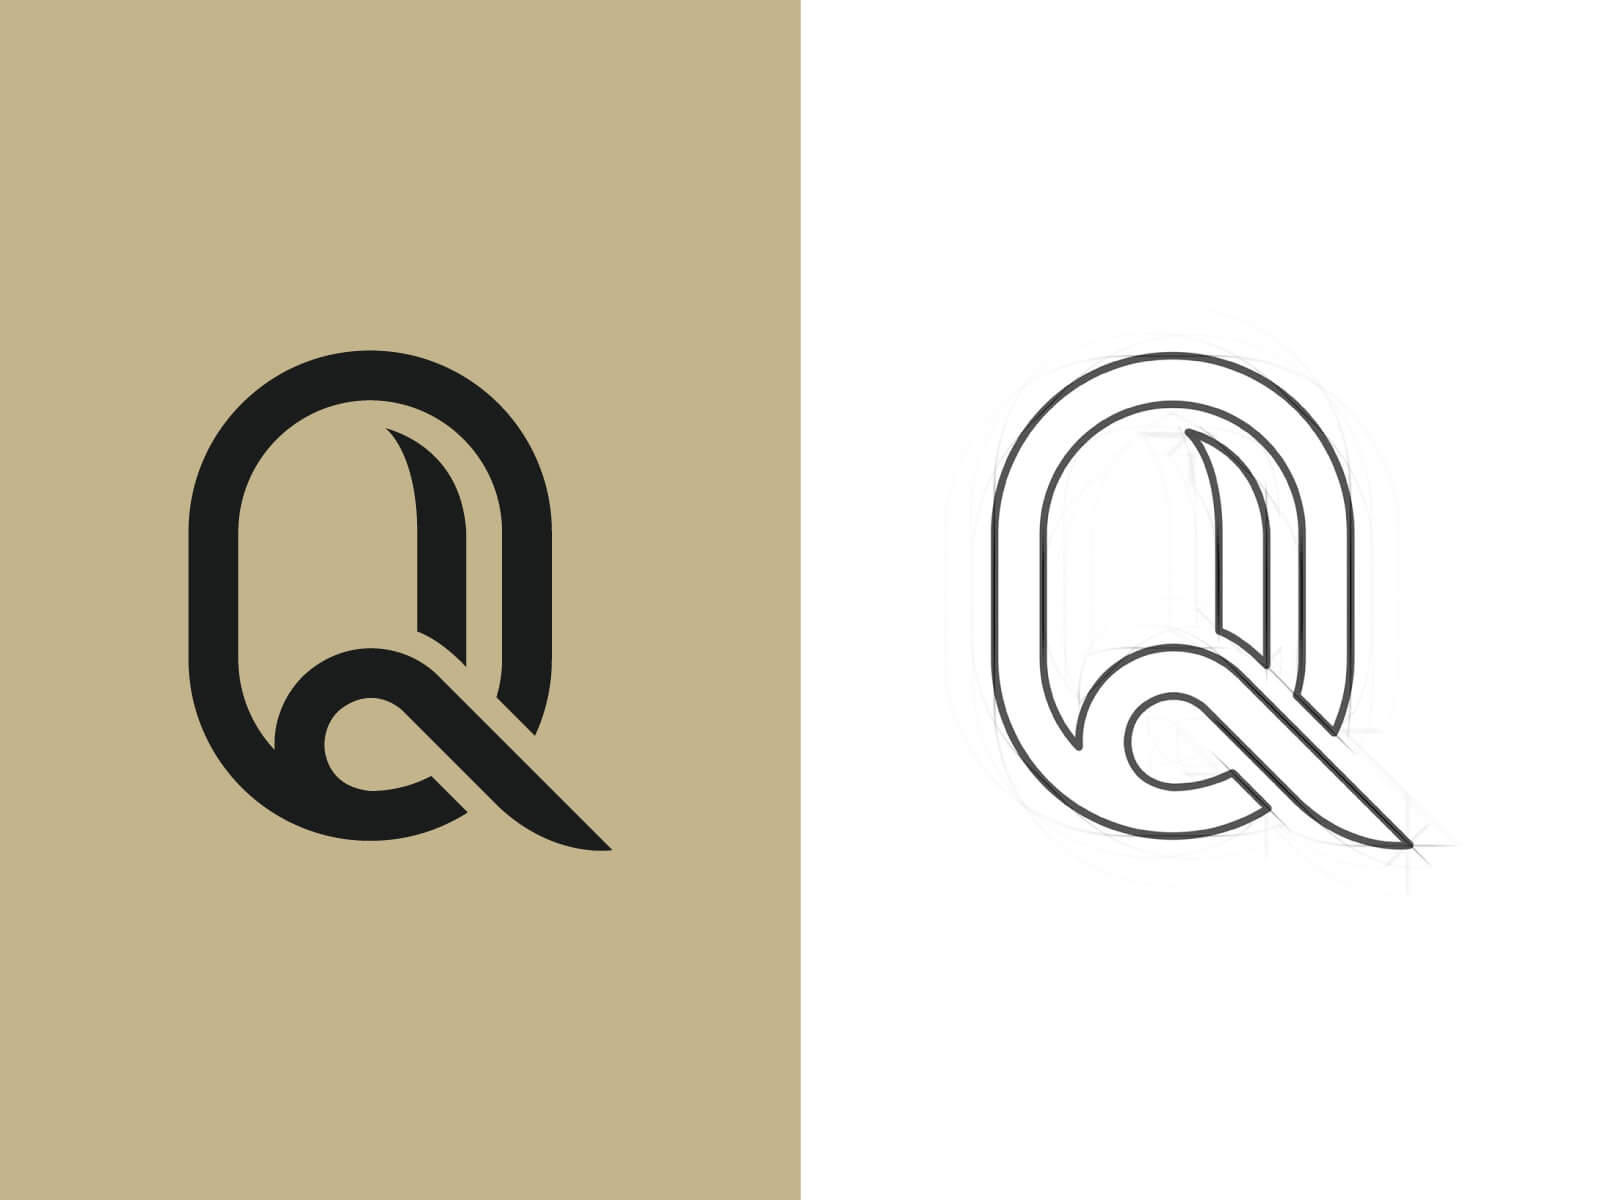 Thiết kế logo chữ Q: Những thiết kế logo chữ Q độc đáo và sáng tạo chắc chắn sẽ khiến bạn cảm thấy ấn tượng. Với sự kết hợp tuyệt vời giữa các phong cách khác nhau, logo chữ Q sẽ giúp thương hiệu của bạn trở nên nổi bật và ấn tượng hơn bao giờ hết. Hãy xem ngay hình ảnh liên quan để cảm nhận được điều đó.